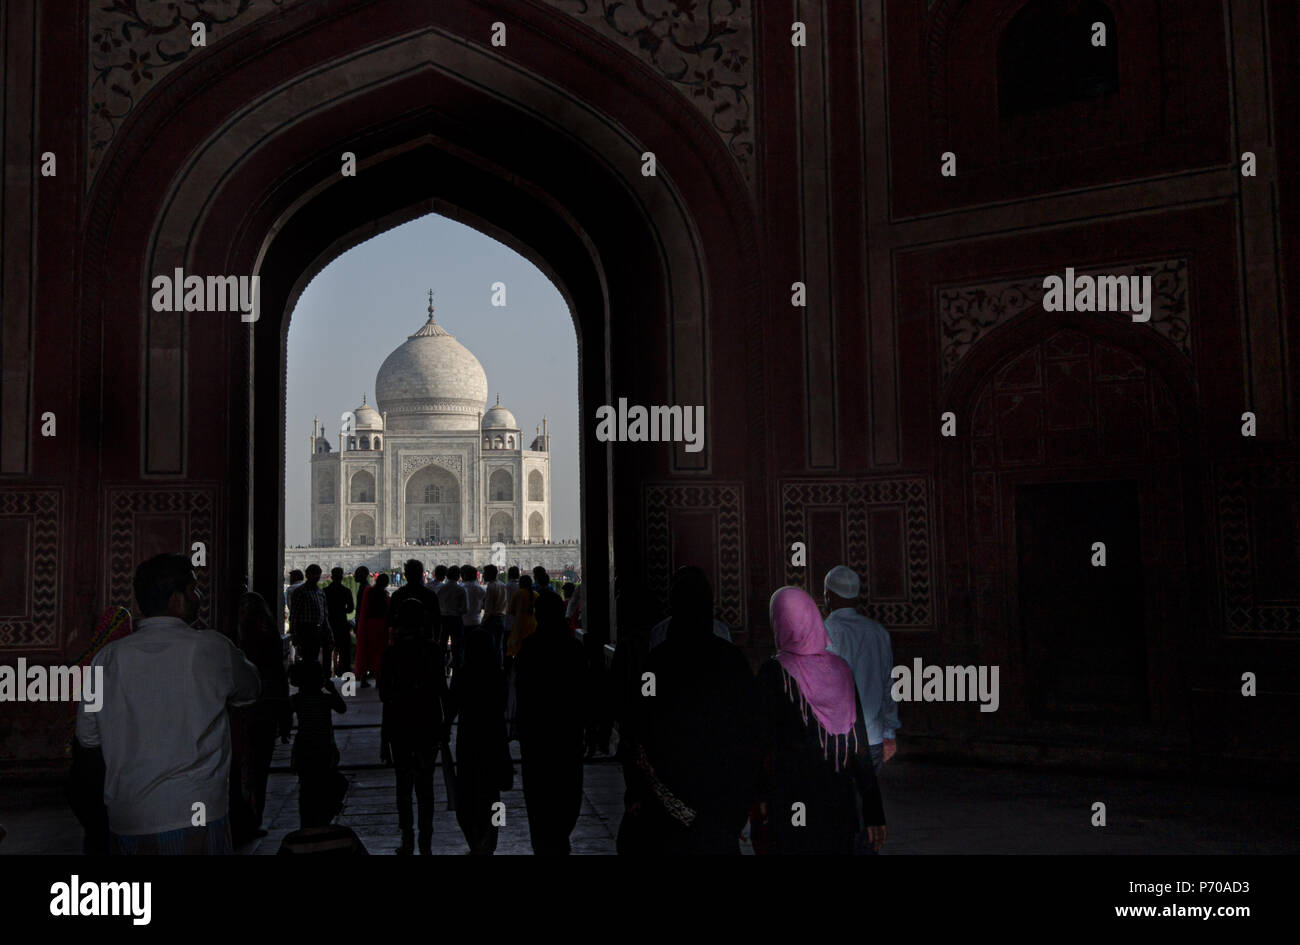 Visiter le Taj Mahal, Agra, l'une des merveille du monde Banque D'Images